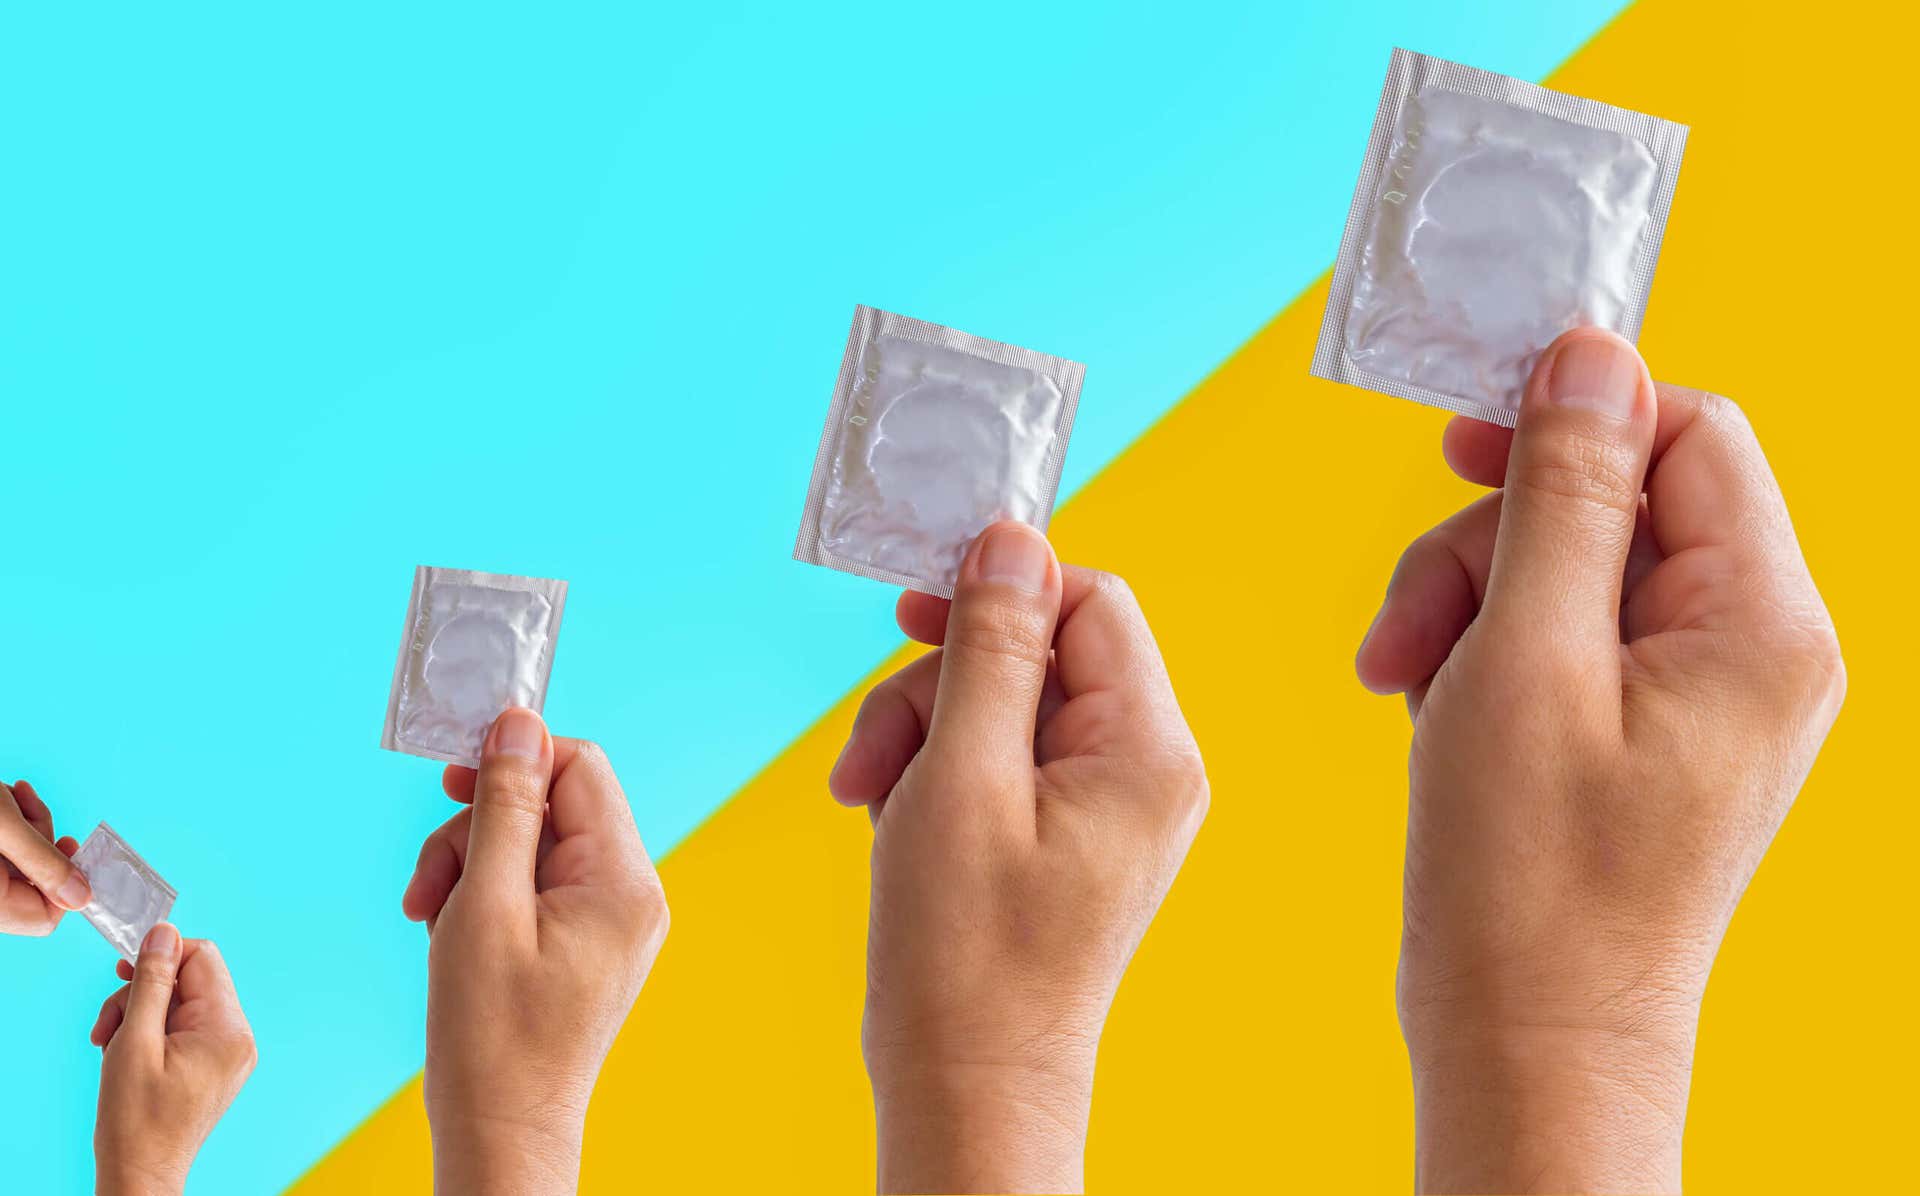 Some condoms.